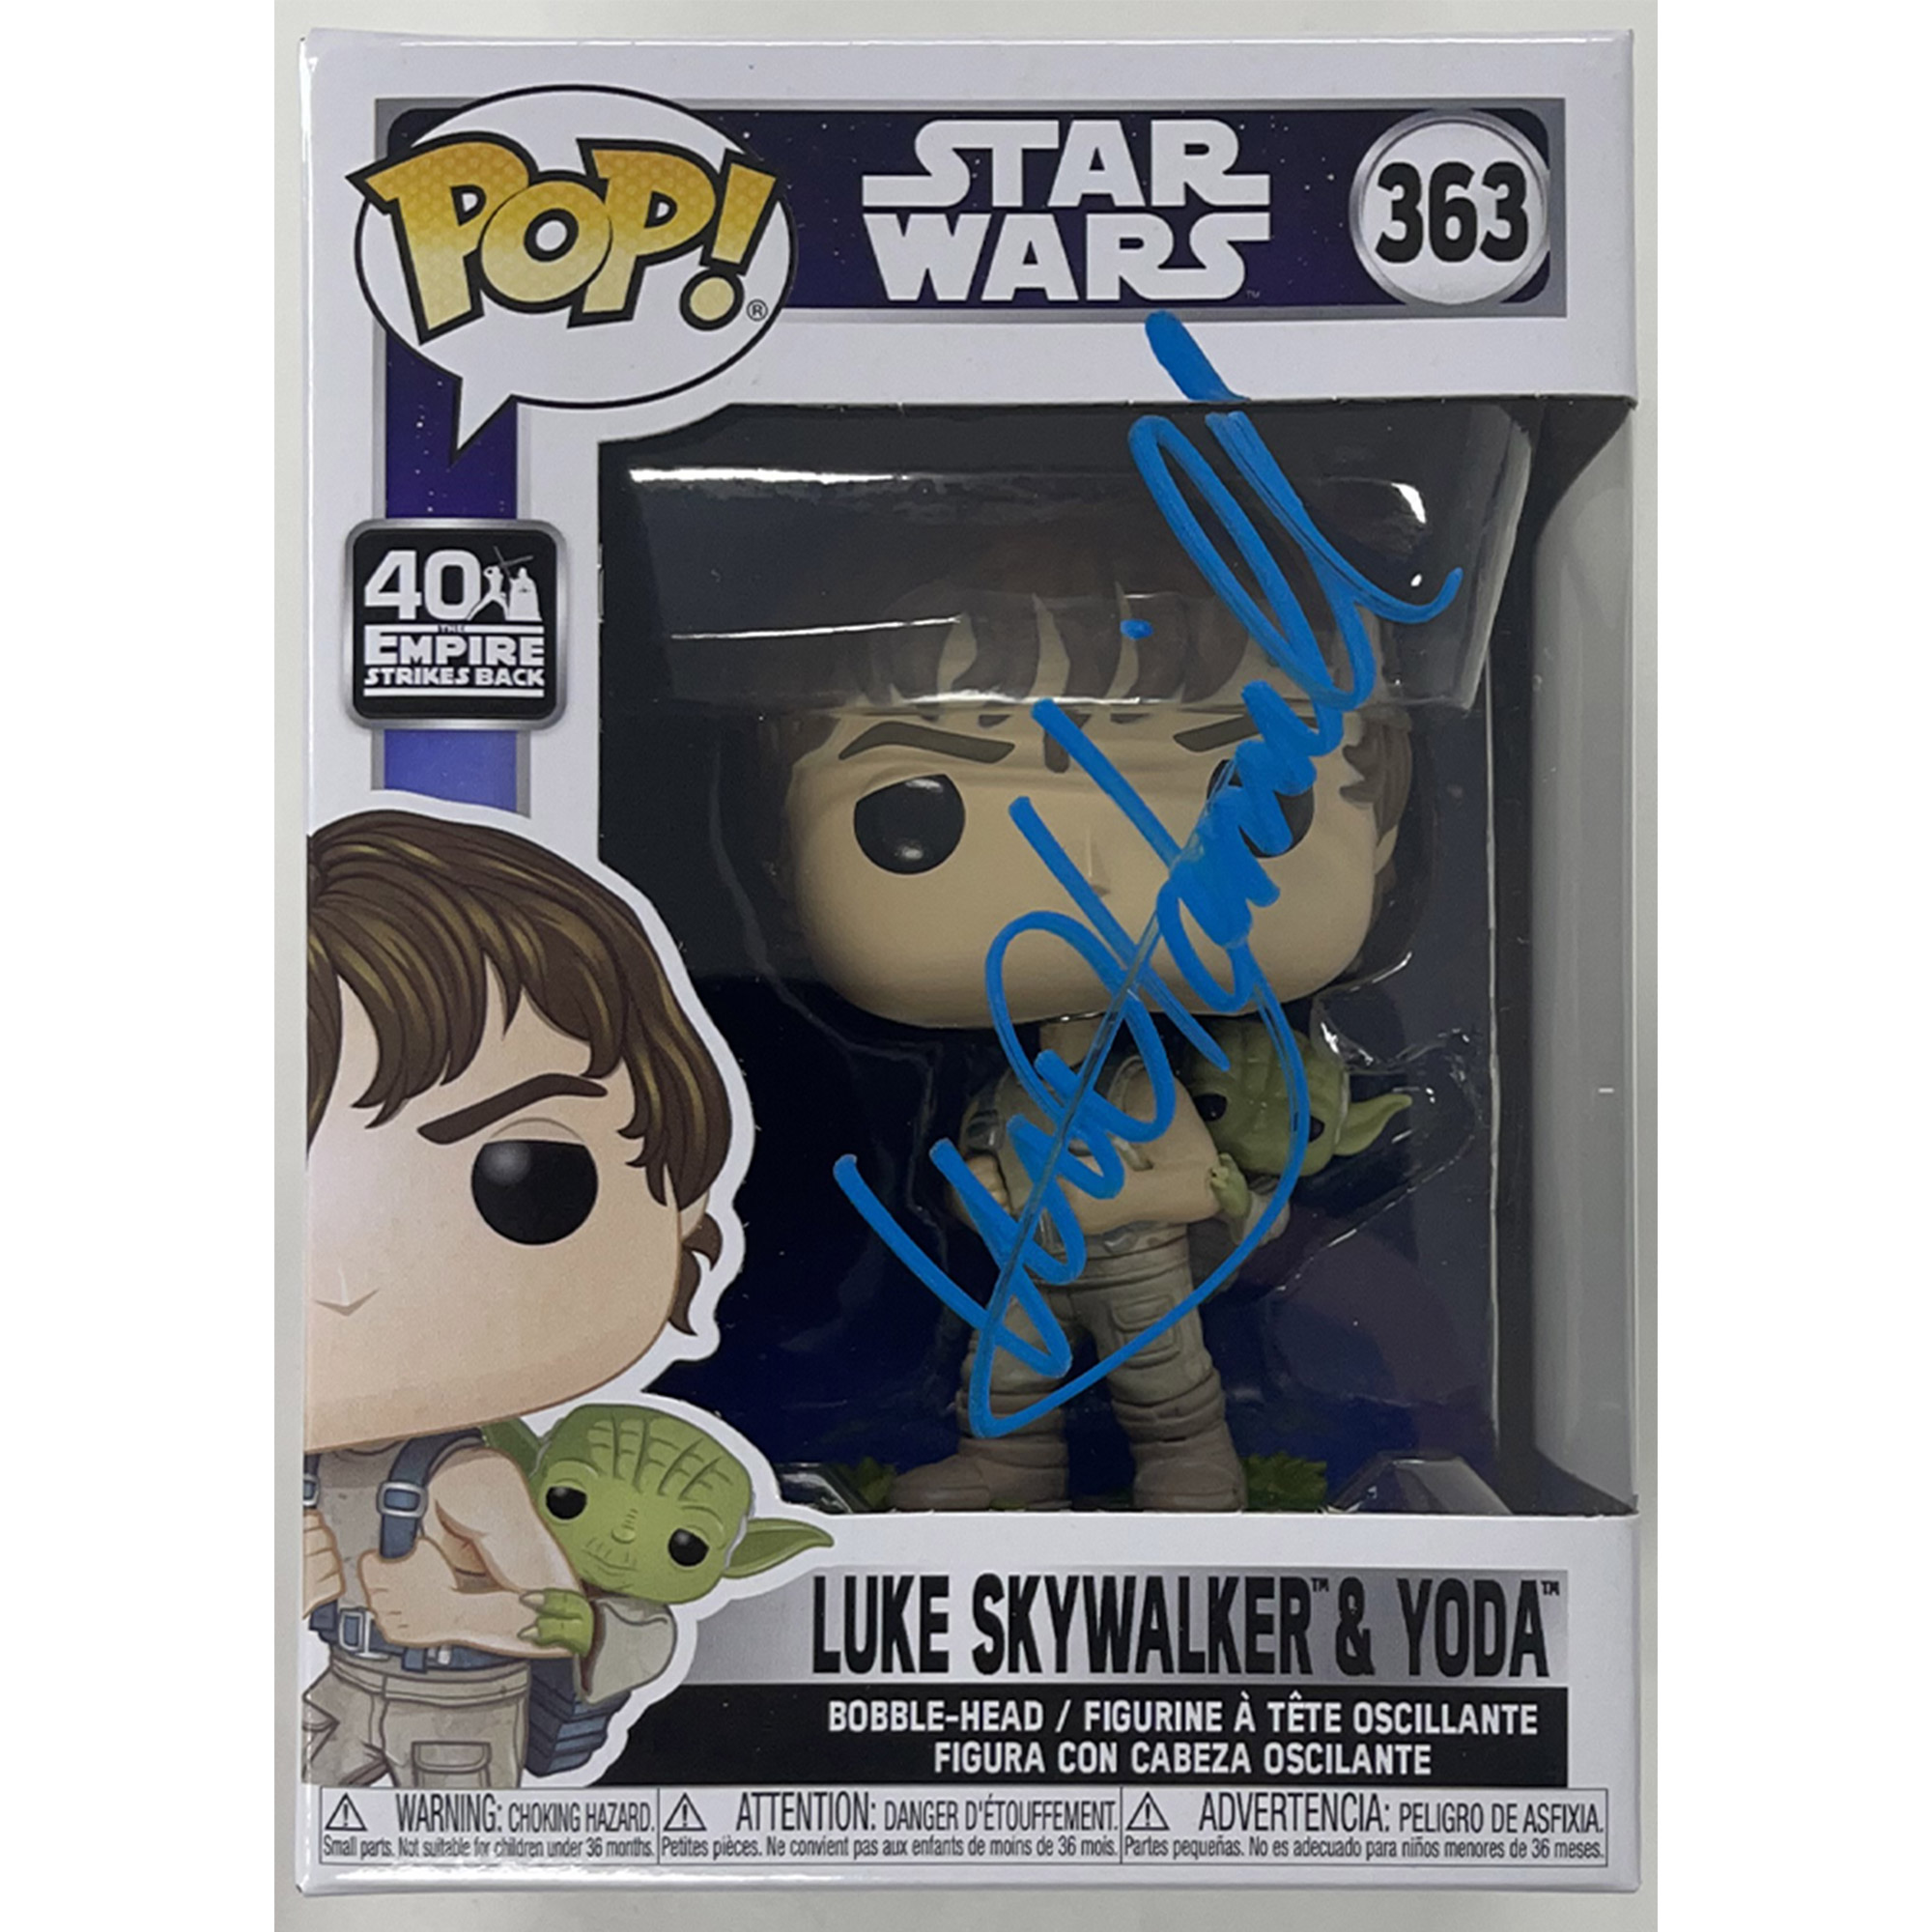 Mark Hamill – “Star Wars” Luke Skywalker & Yoda...